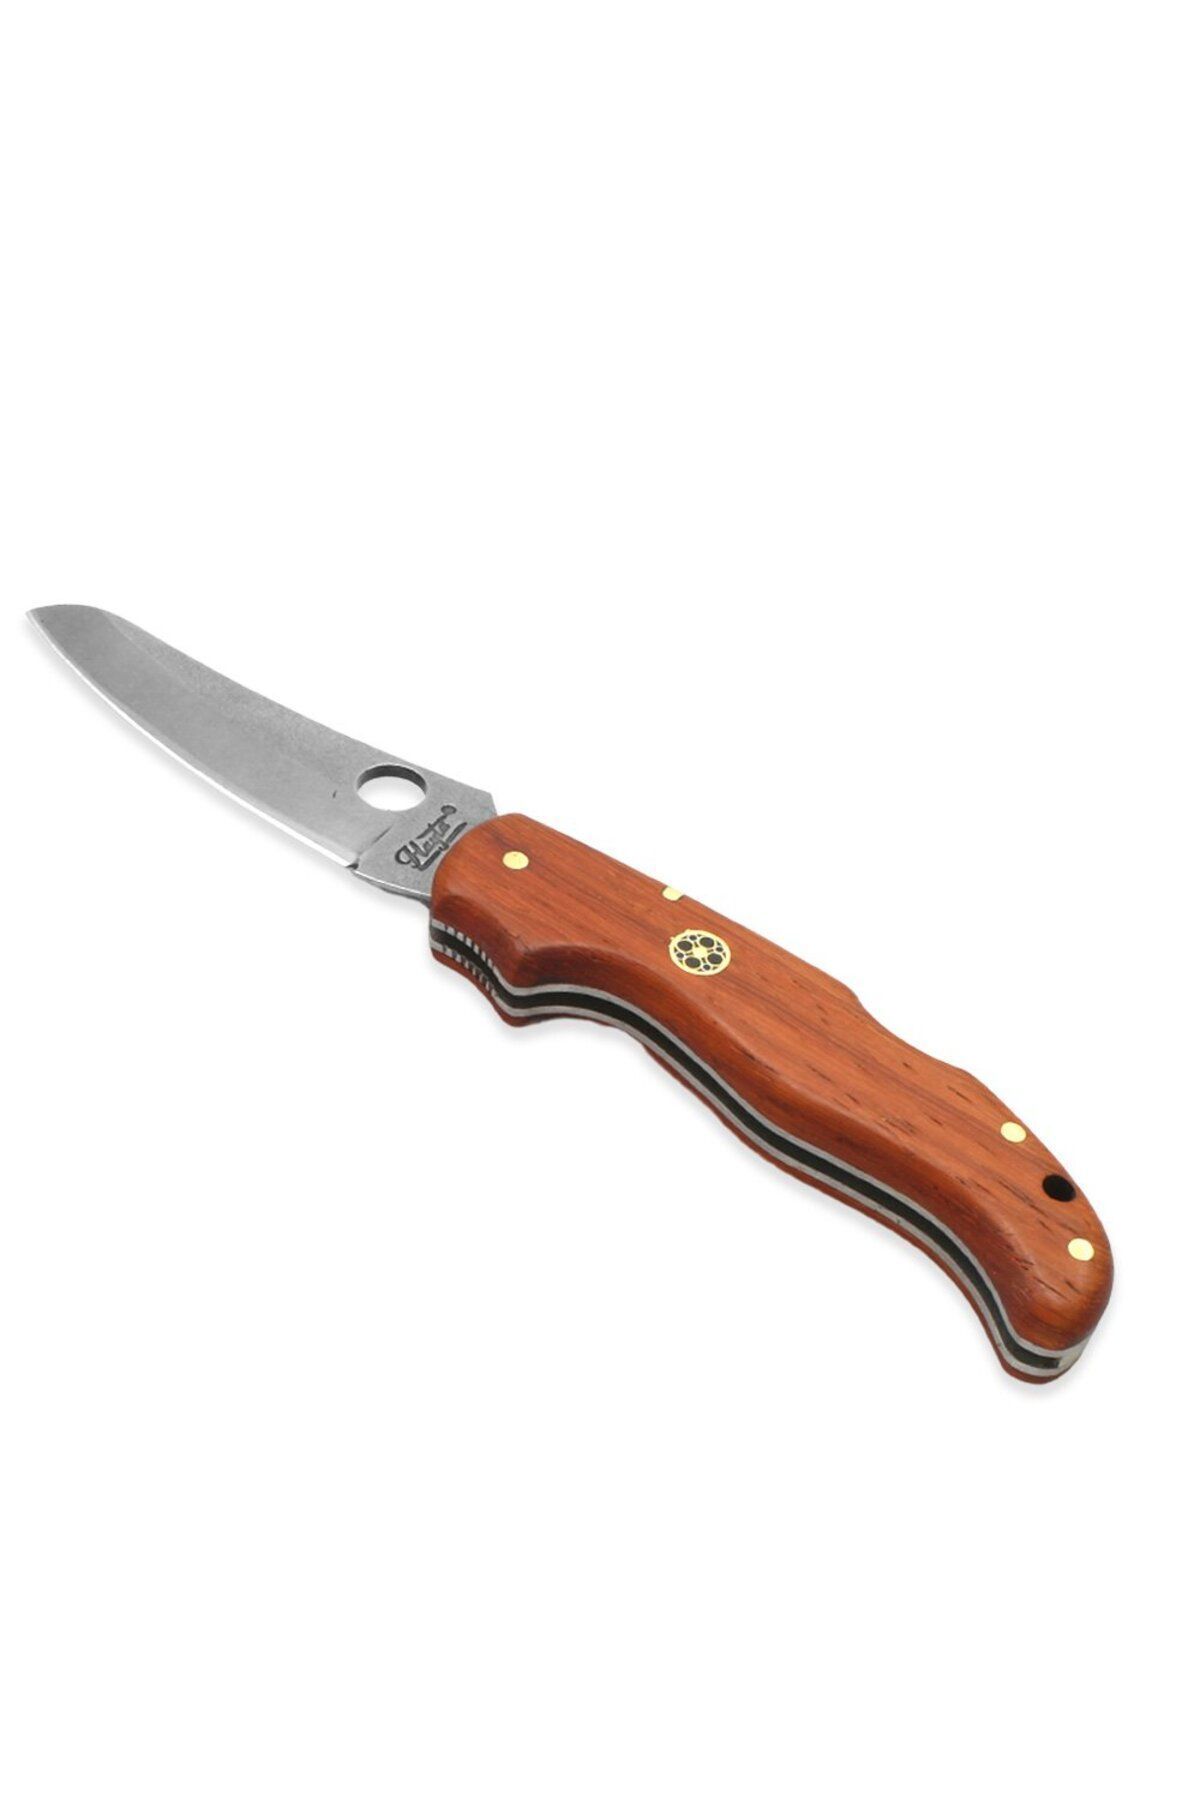 Tesbihane Padok Ağacı Delikli Hayta Model 4116 Karartılmış Çelik Avcı/Kamp Bıçağı